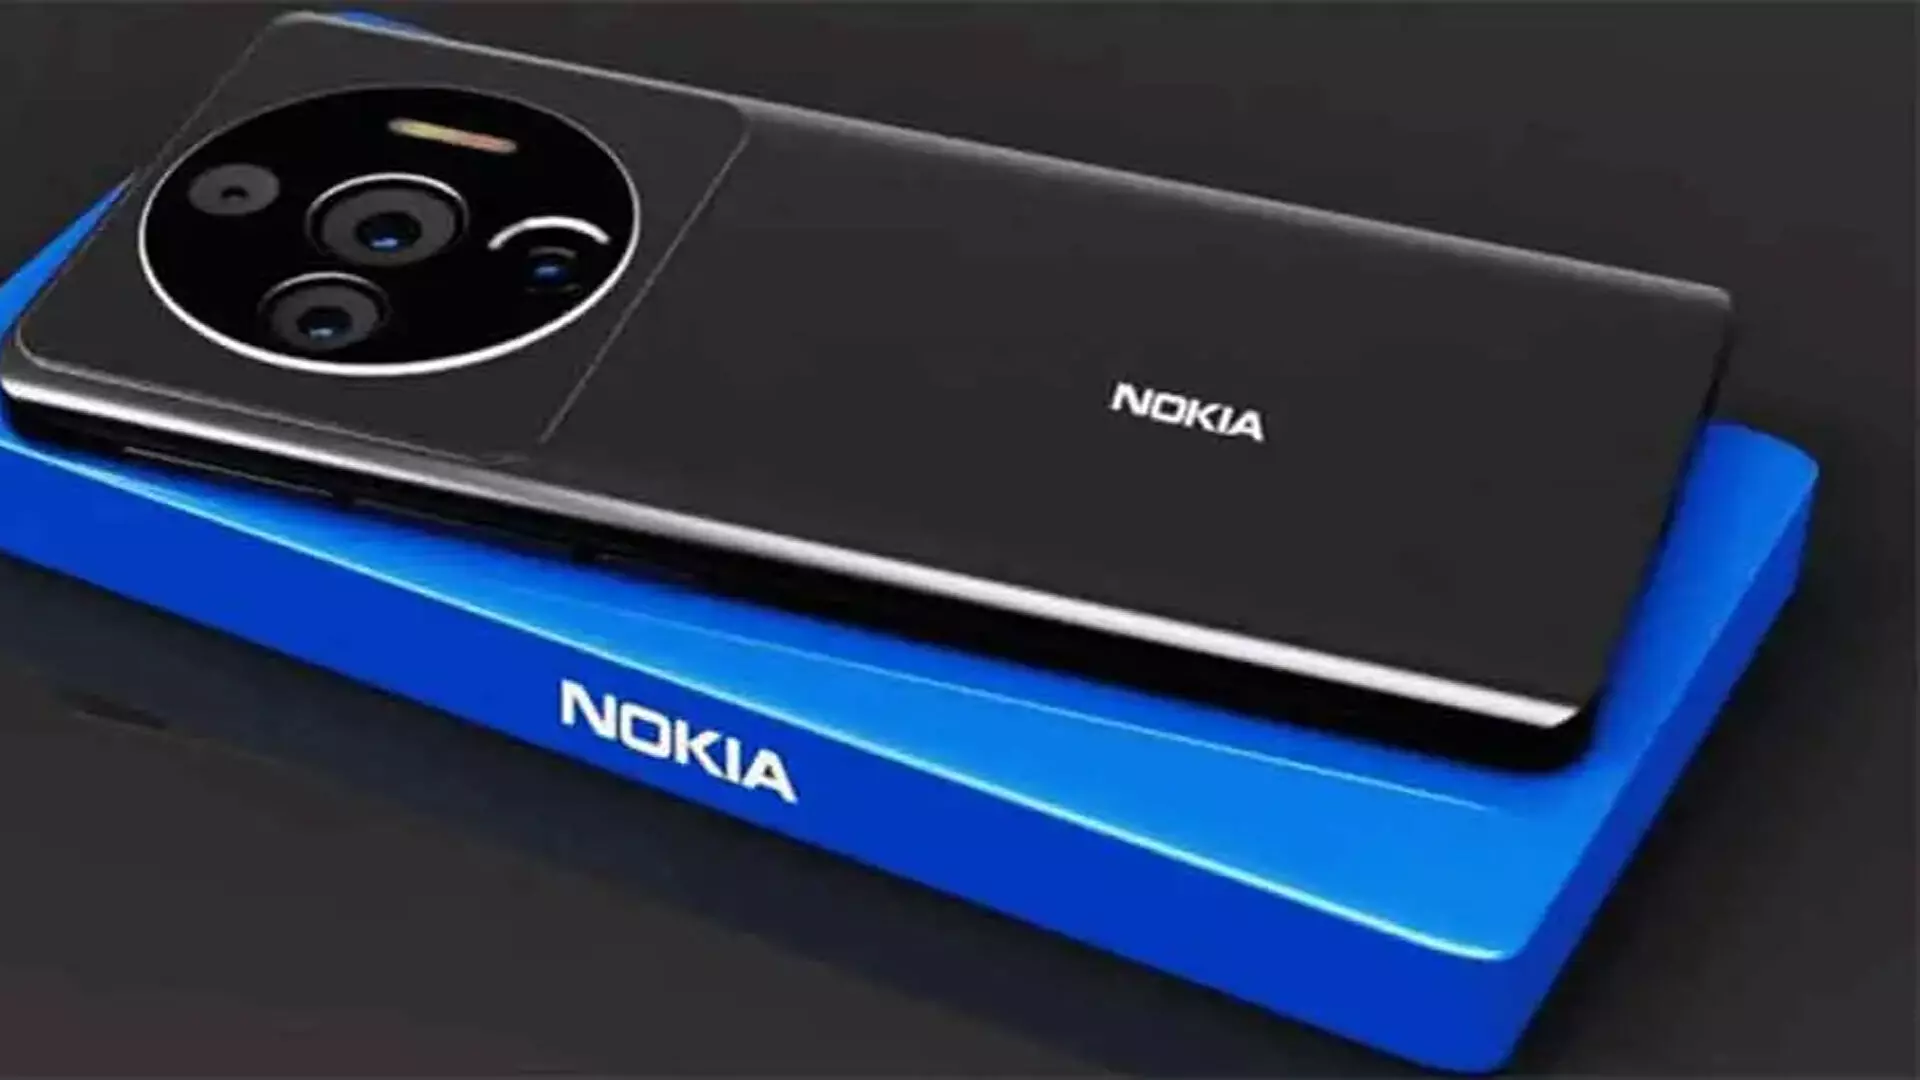 Nokia 1100: नोकिया का धांसू स्मार्टफोन, बजट में हिट और फीचर्स फिट